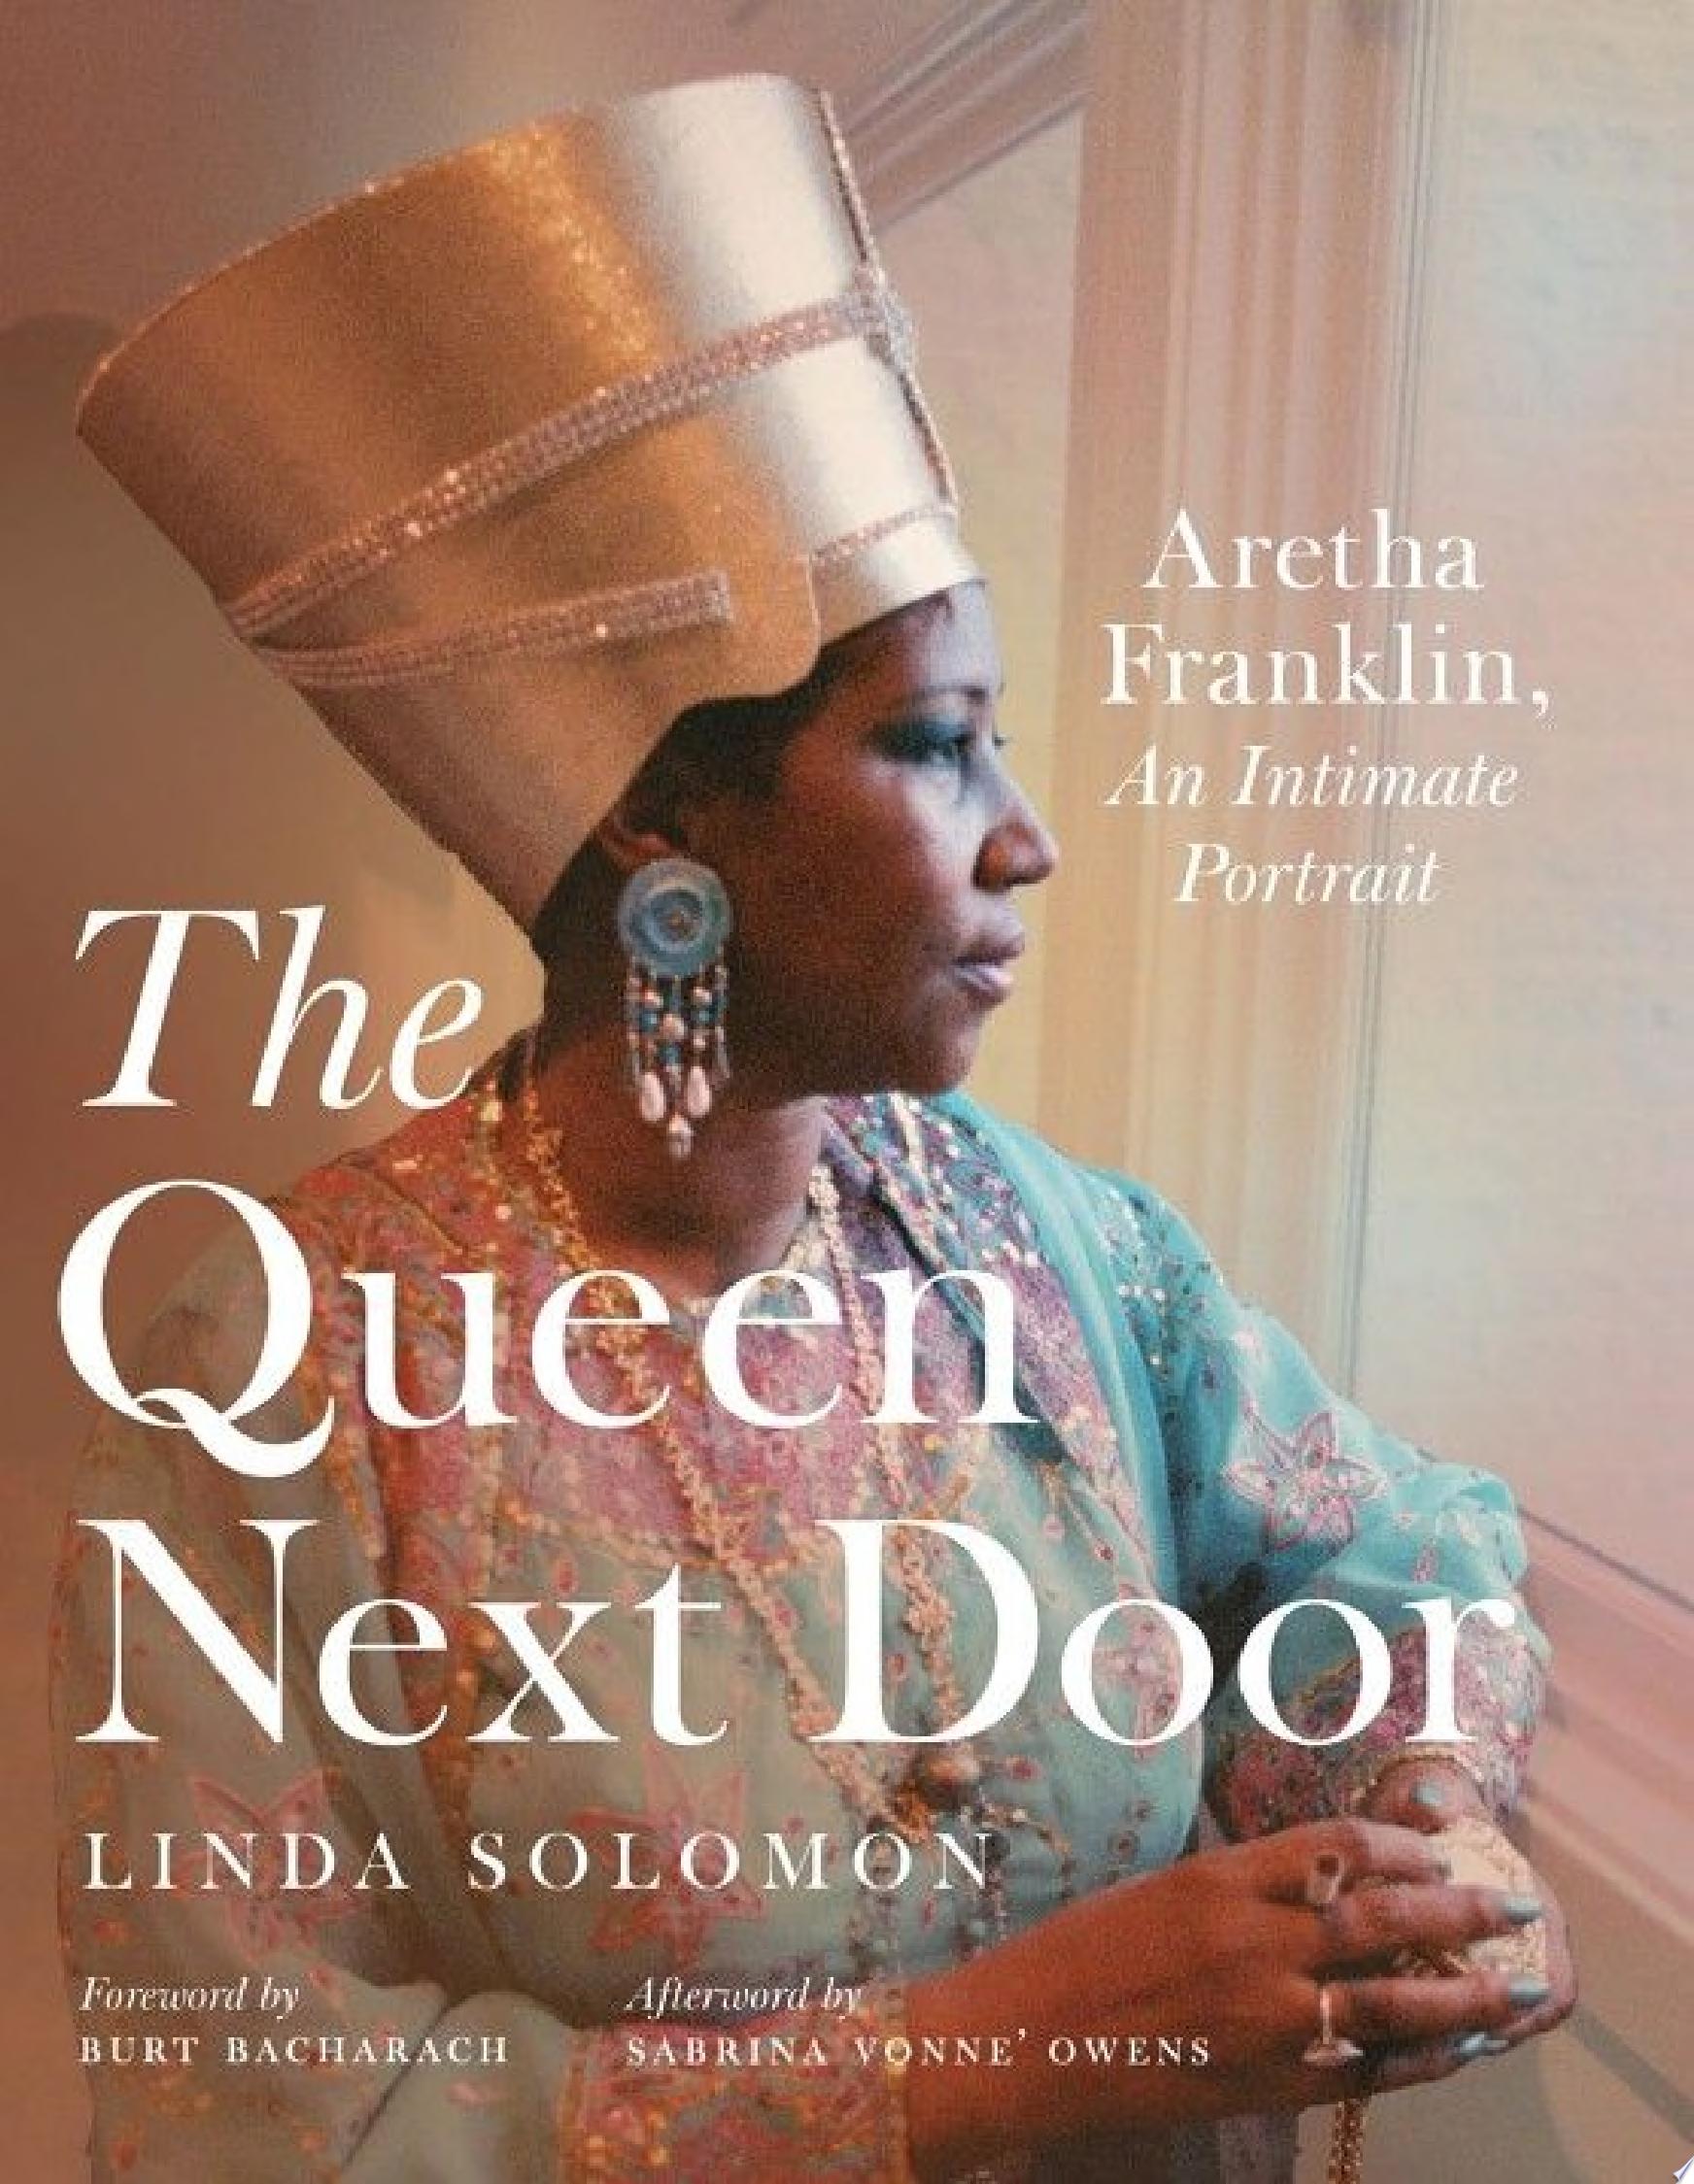 Image for "The Queen Next Door"